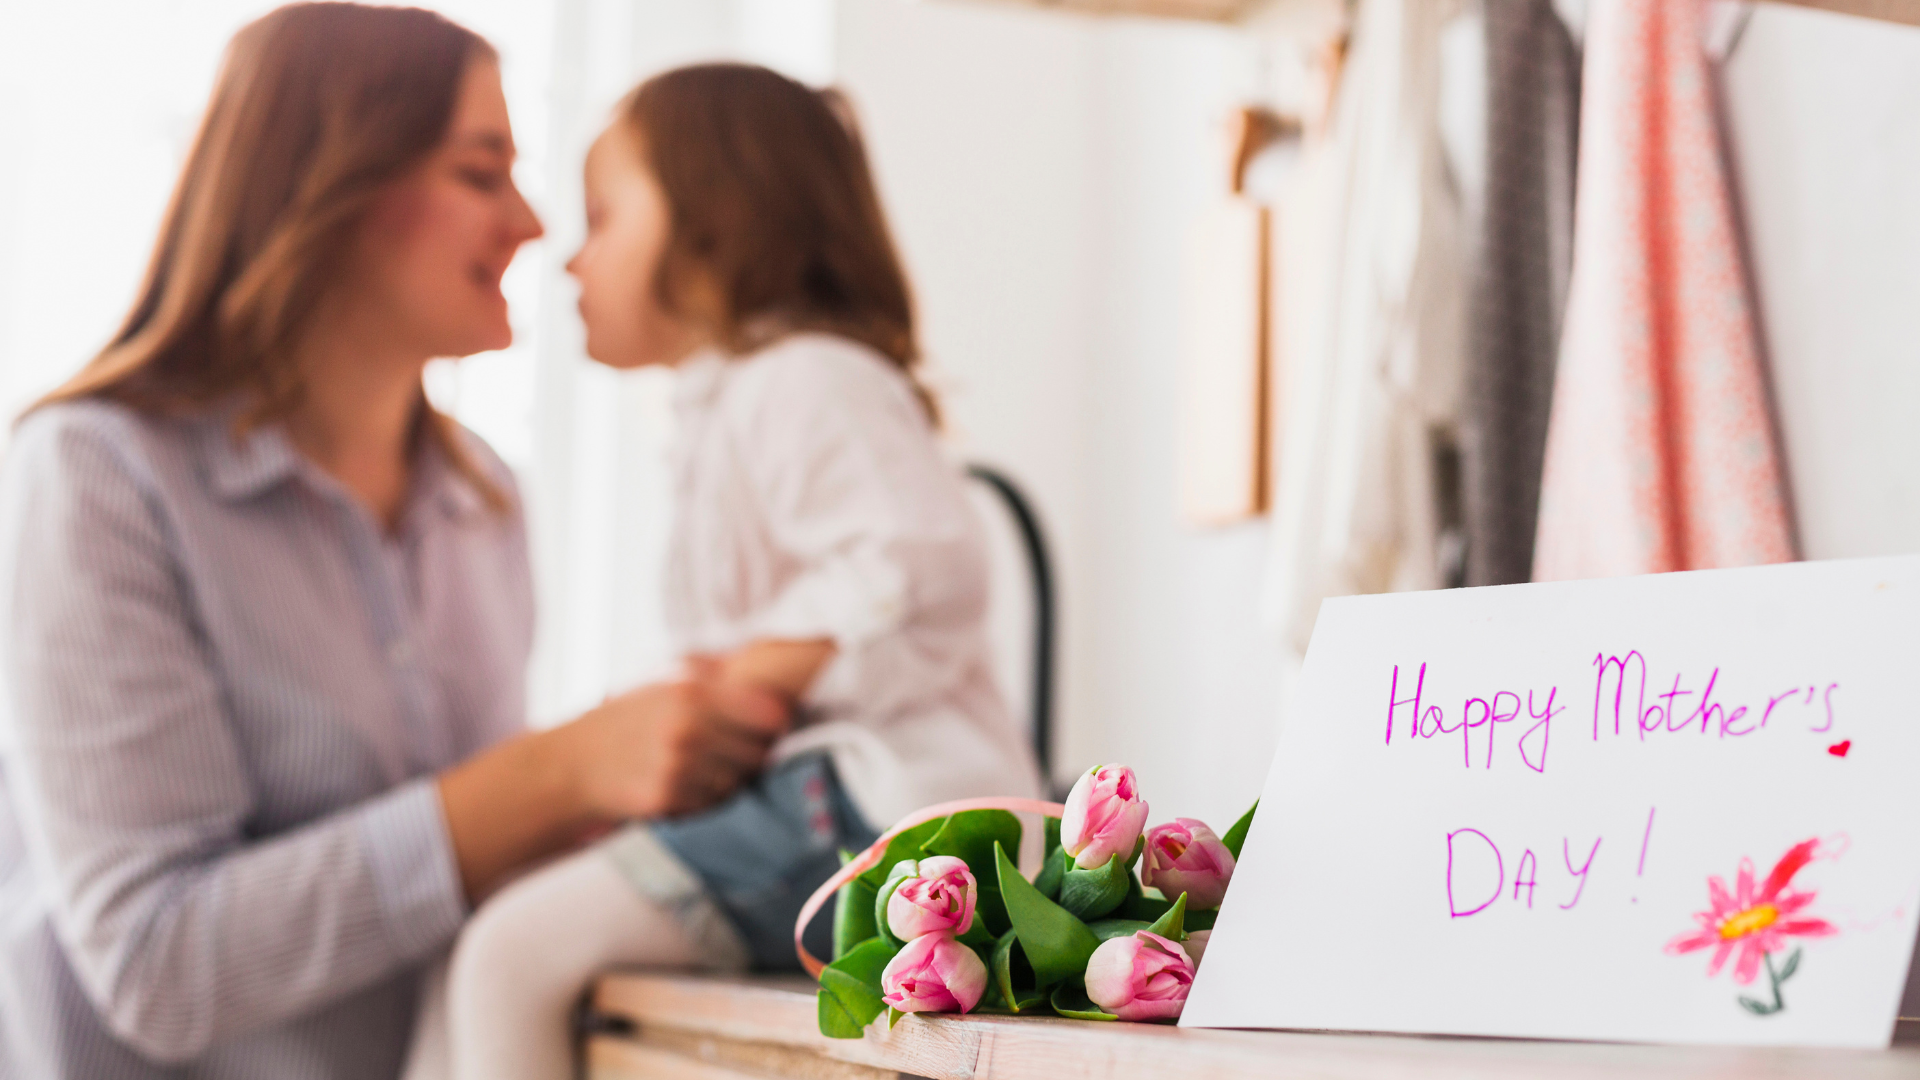 Como comemorar o dia das mães nas empresas? | Dicas + animação gratuita - B2 Midia